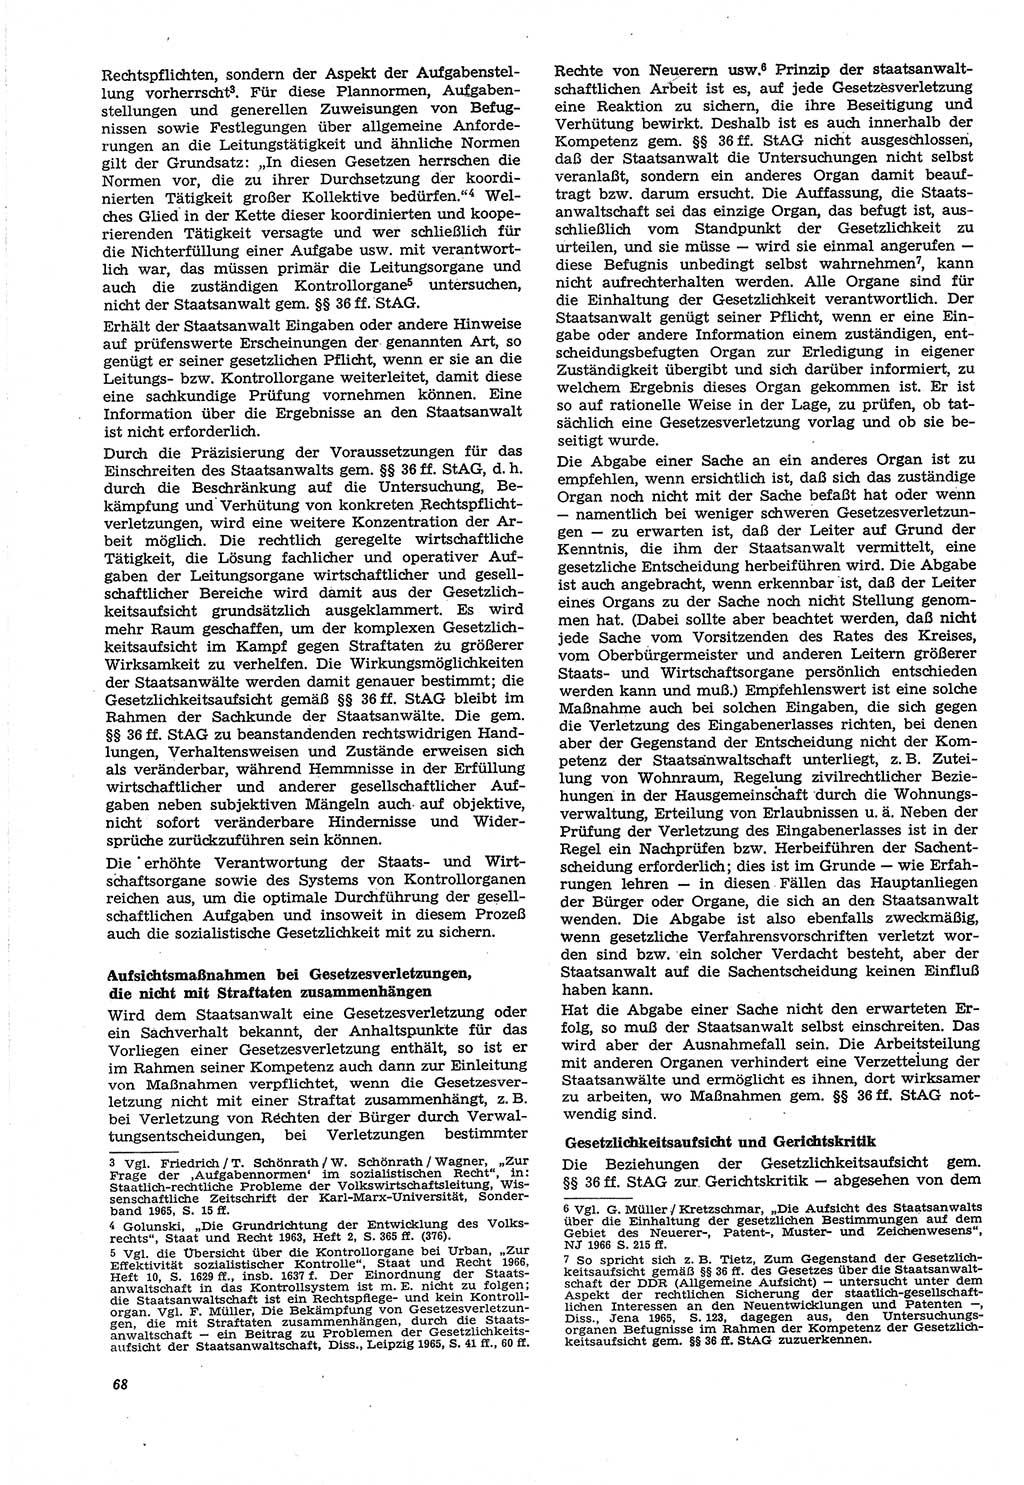 Neue Justiz (NJ), Zeitschrift für Recht und Rechtswissenschaft [Deutsche Demokratische Republik (DDR)], 21. Jahrgang 1967, Seite 68 (NJ DDR 1967, S. 68)